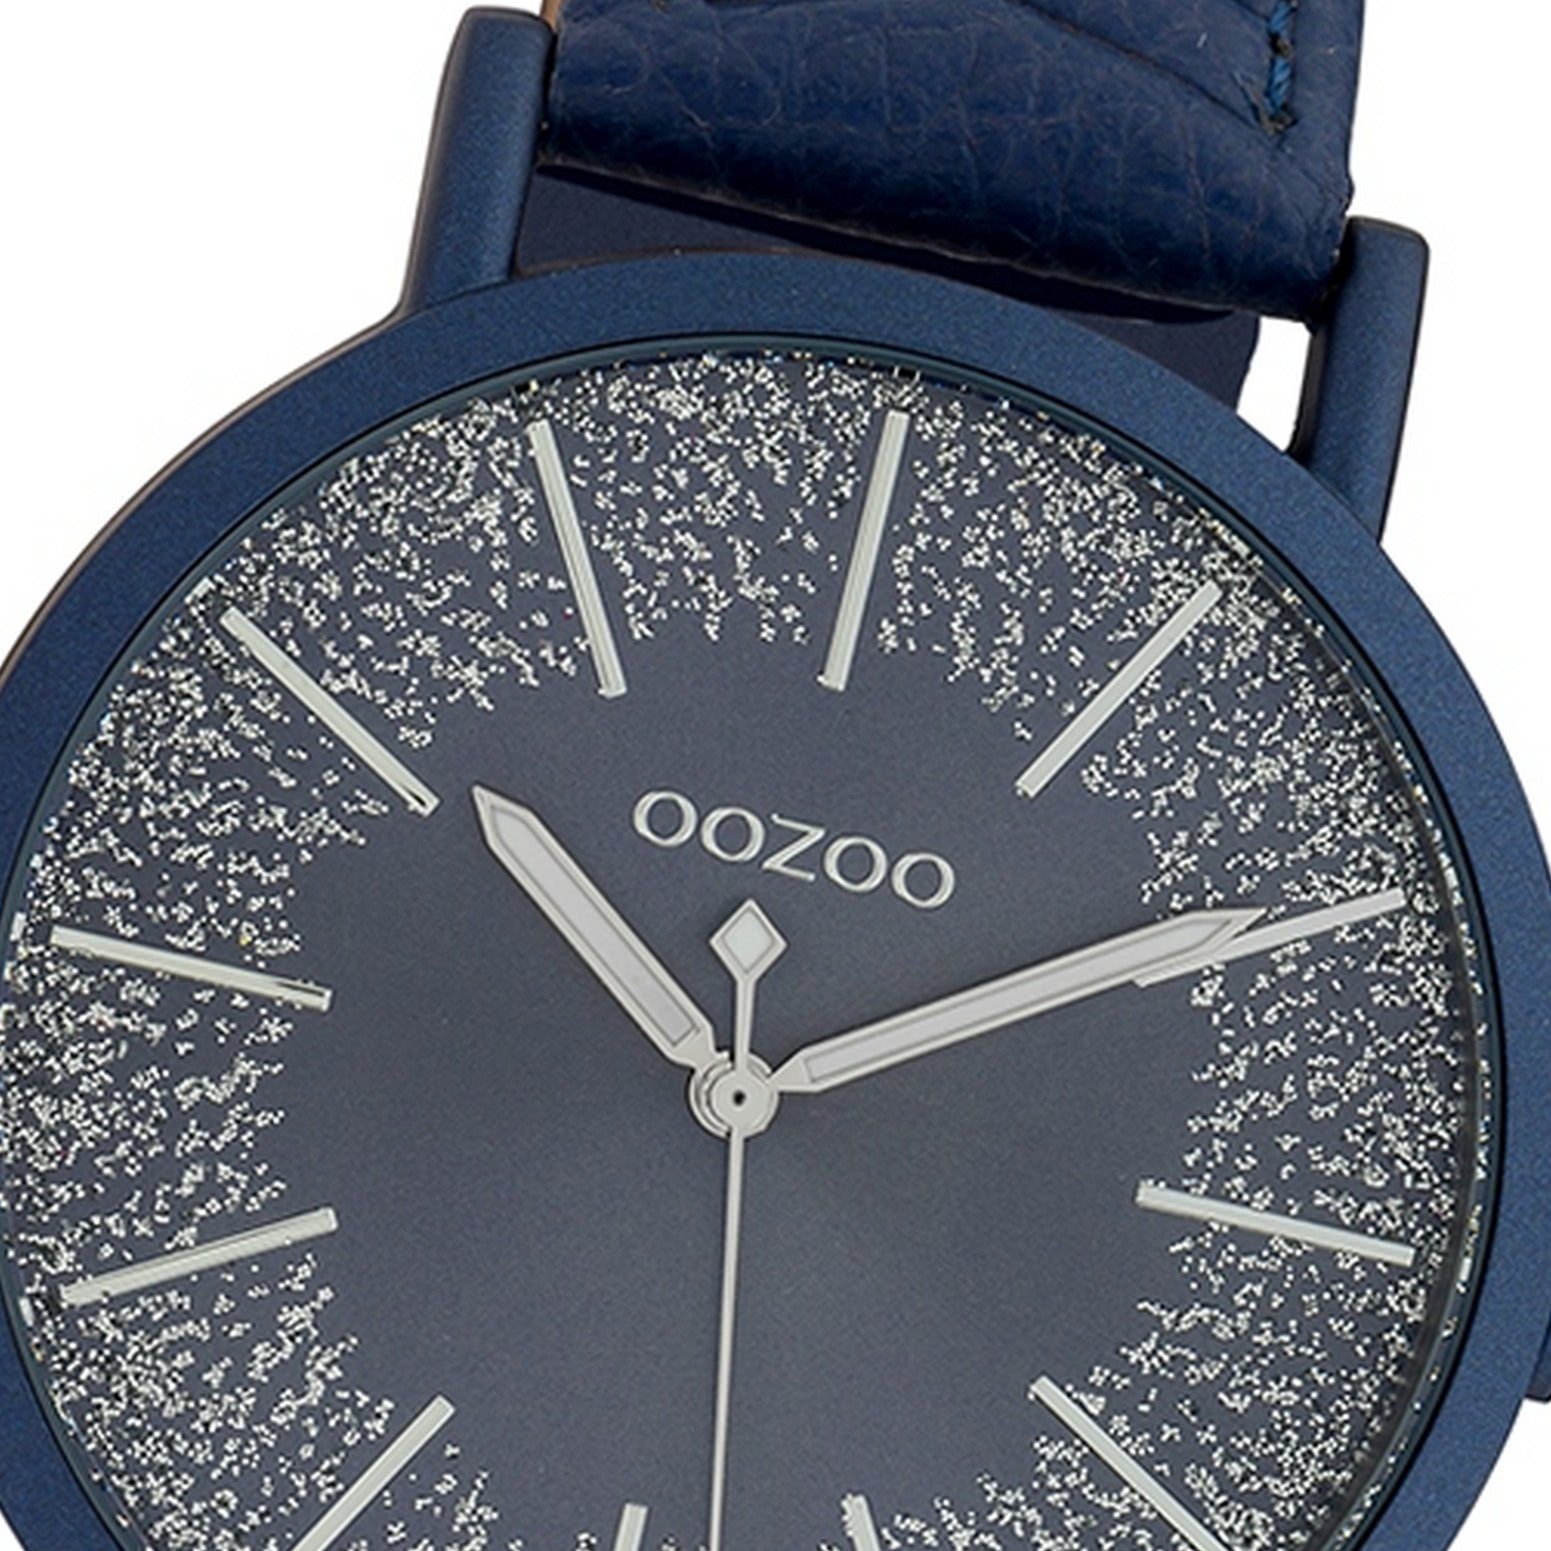 OOZOO Quarzuhr Oozoo Damen-Uhr dunkelblau, Damenuhr rund, groß (ca. 42mm),  Lederarmband dunkelblau, Fashion, silberne Zeiger und Indizes